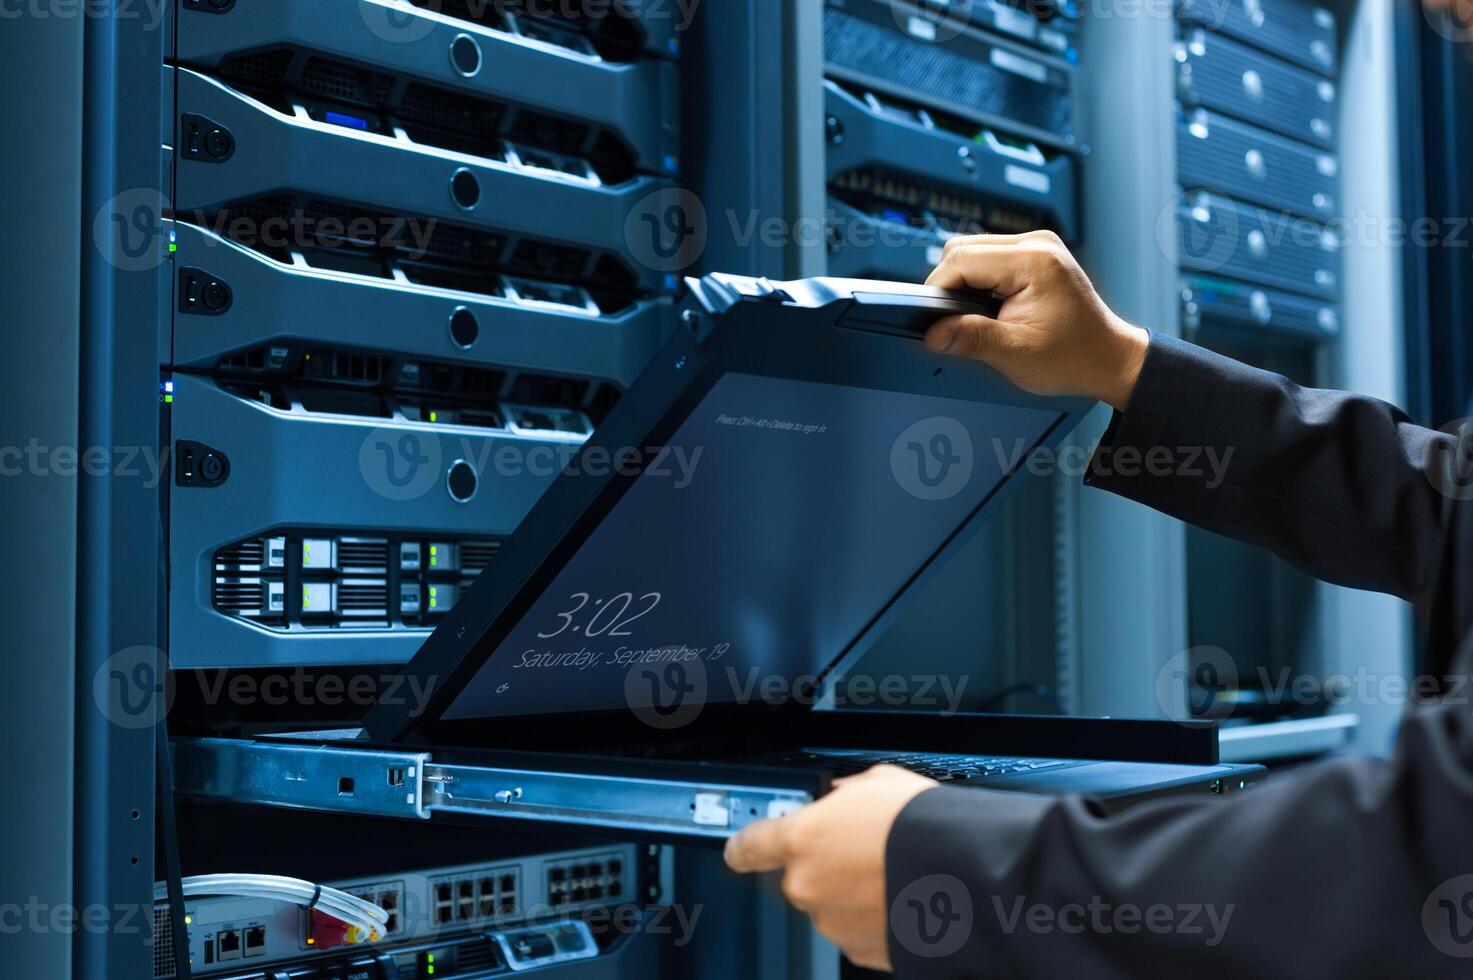 den ingenjör reparation en server i en datacenter foto